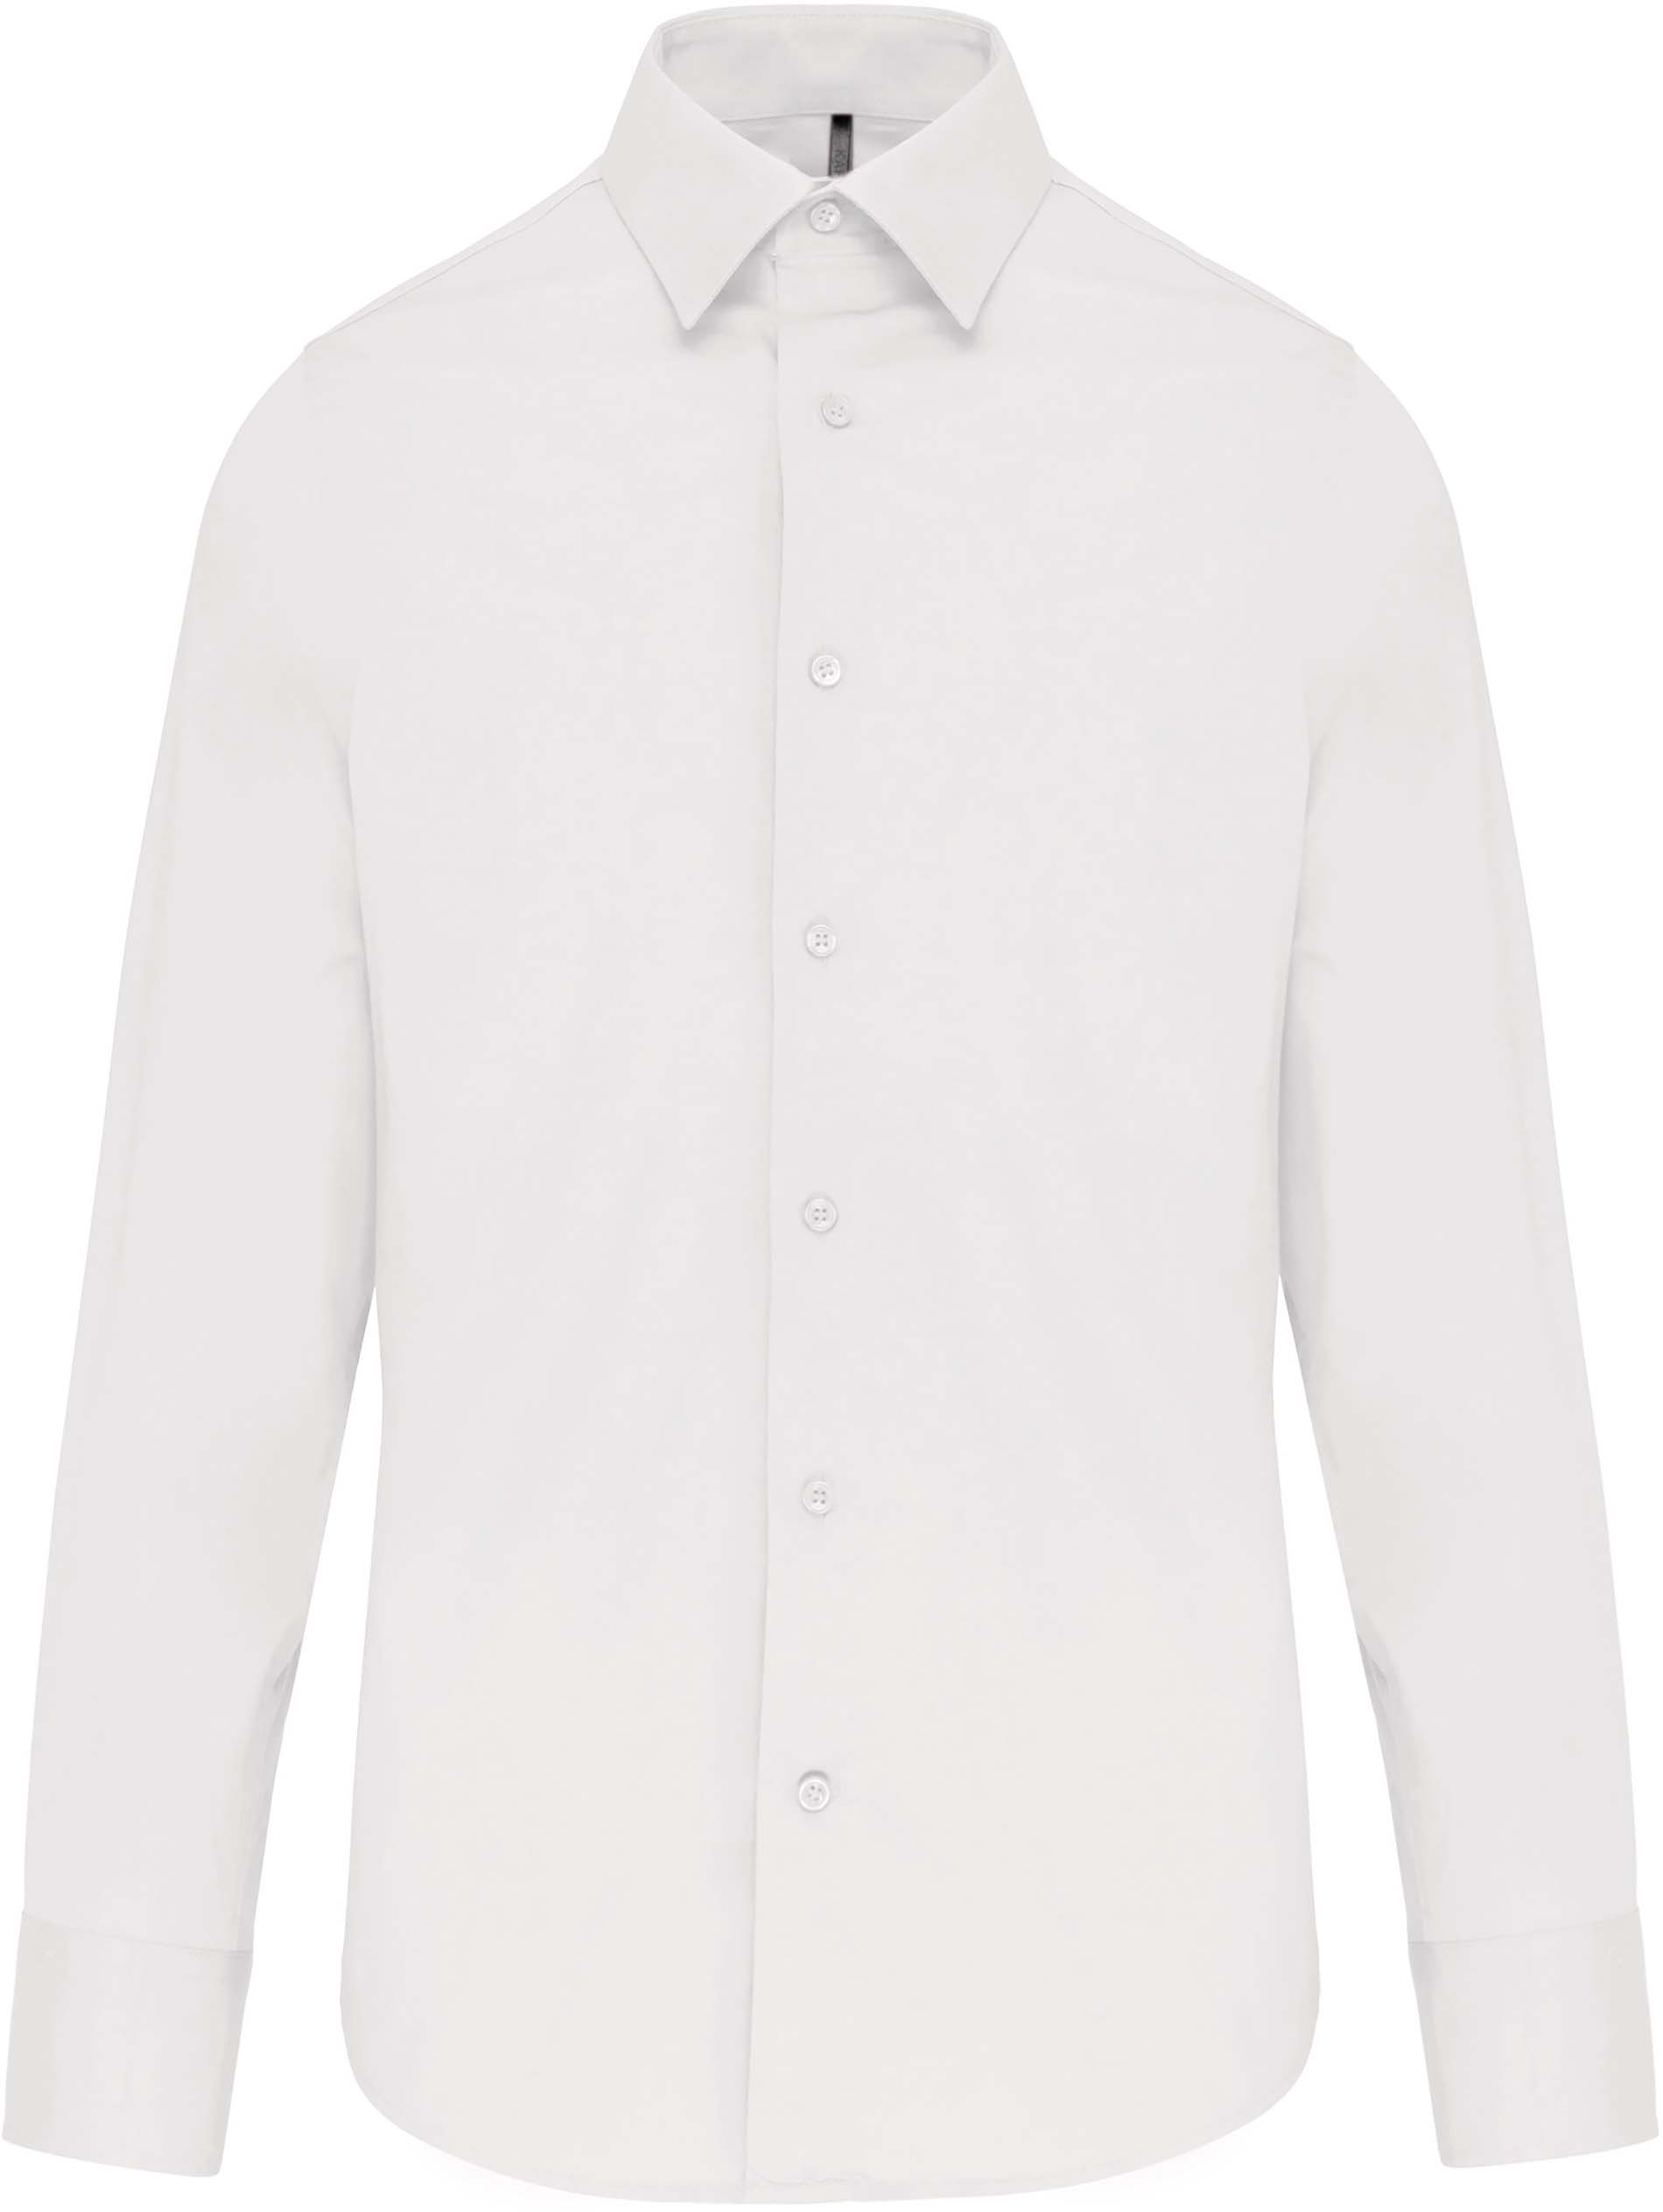 Pánská strečová košile s dlouhým rukávem Velikost: 3XL, Barva: white, Rozměr: 86,30/66